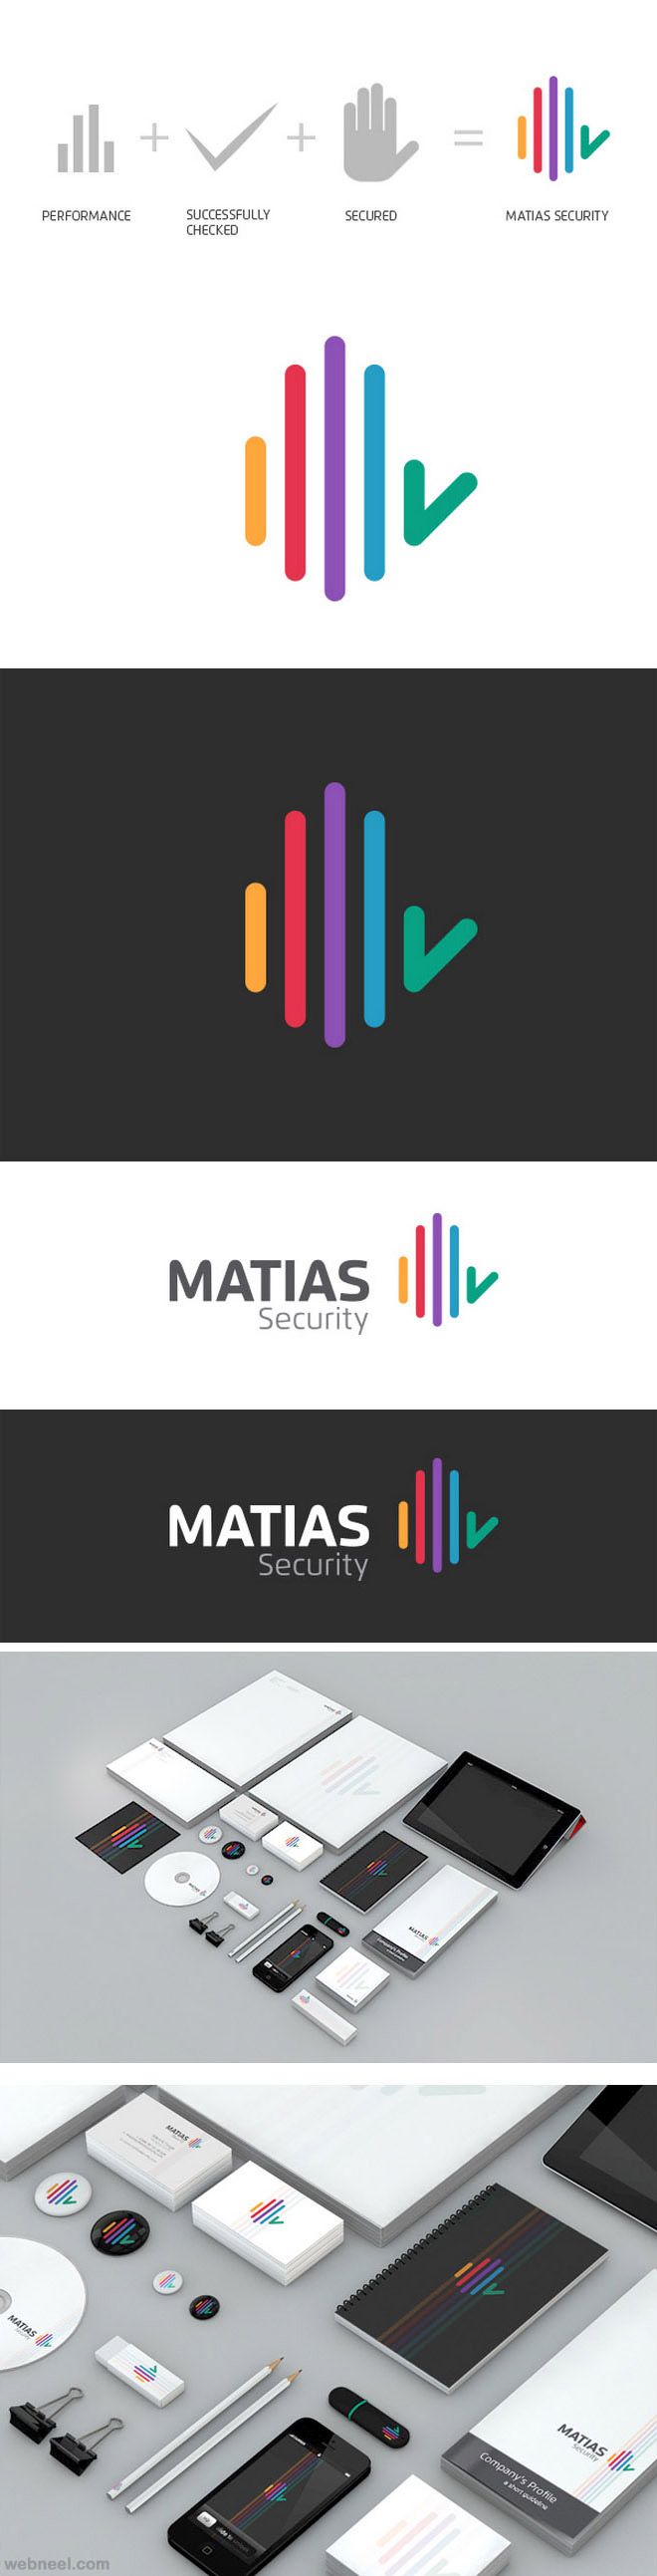 matias rebranding identity design